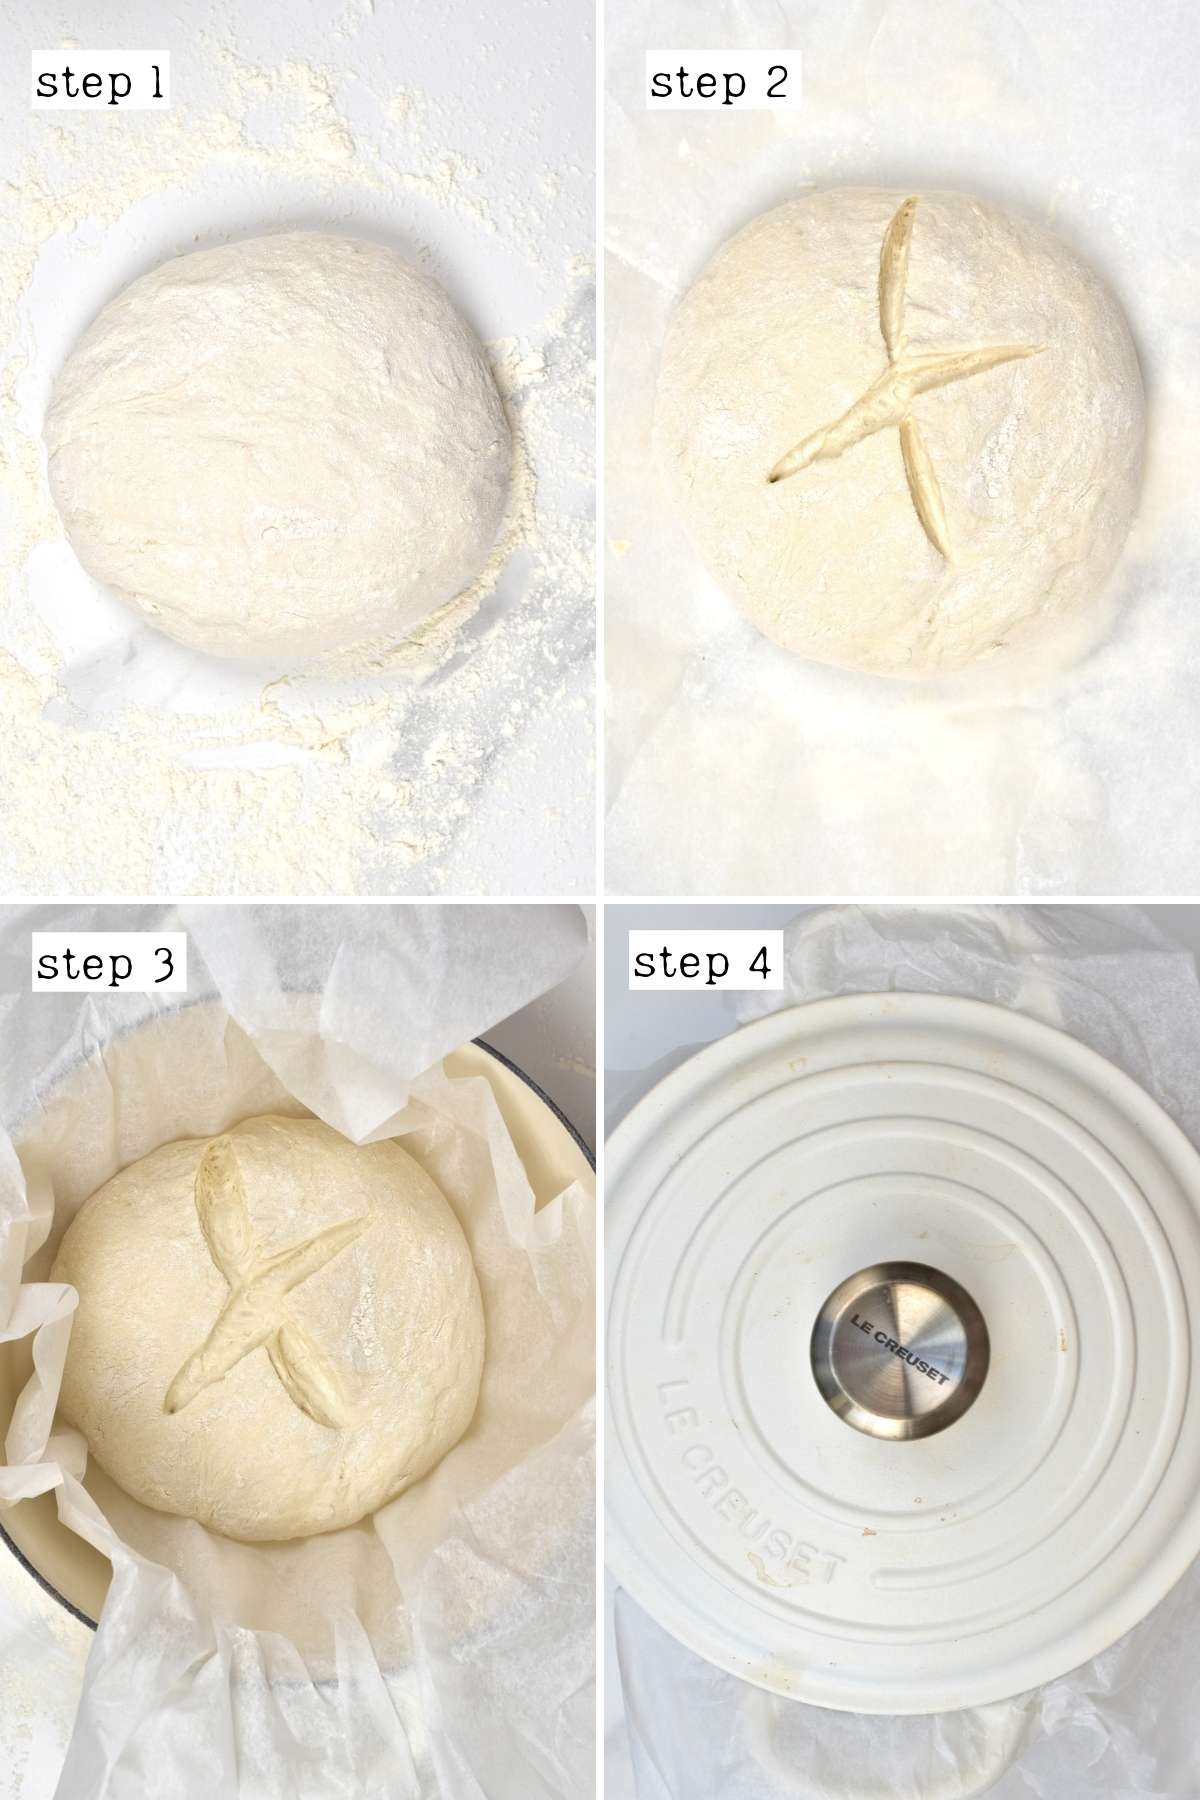 Steps for scoring no knead dough